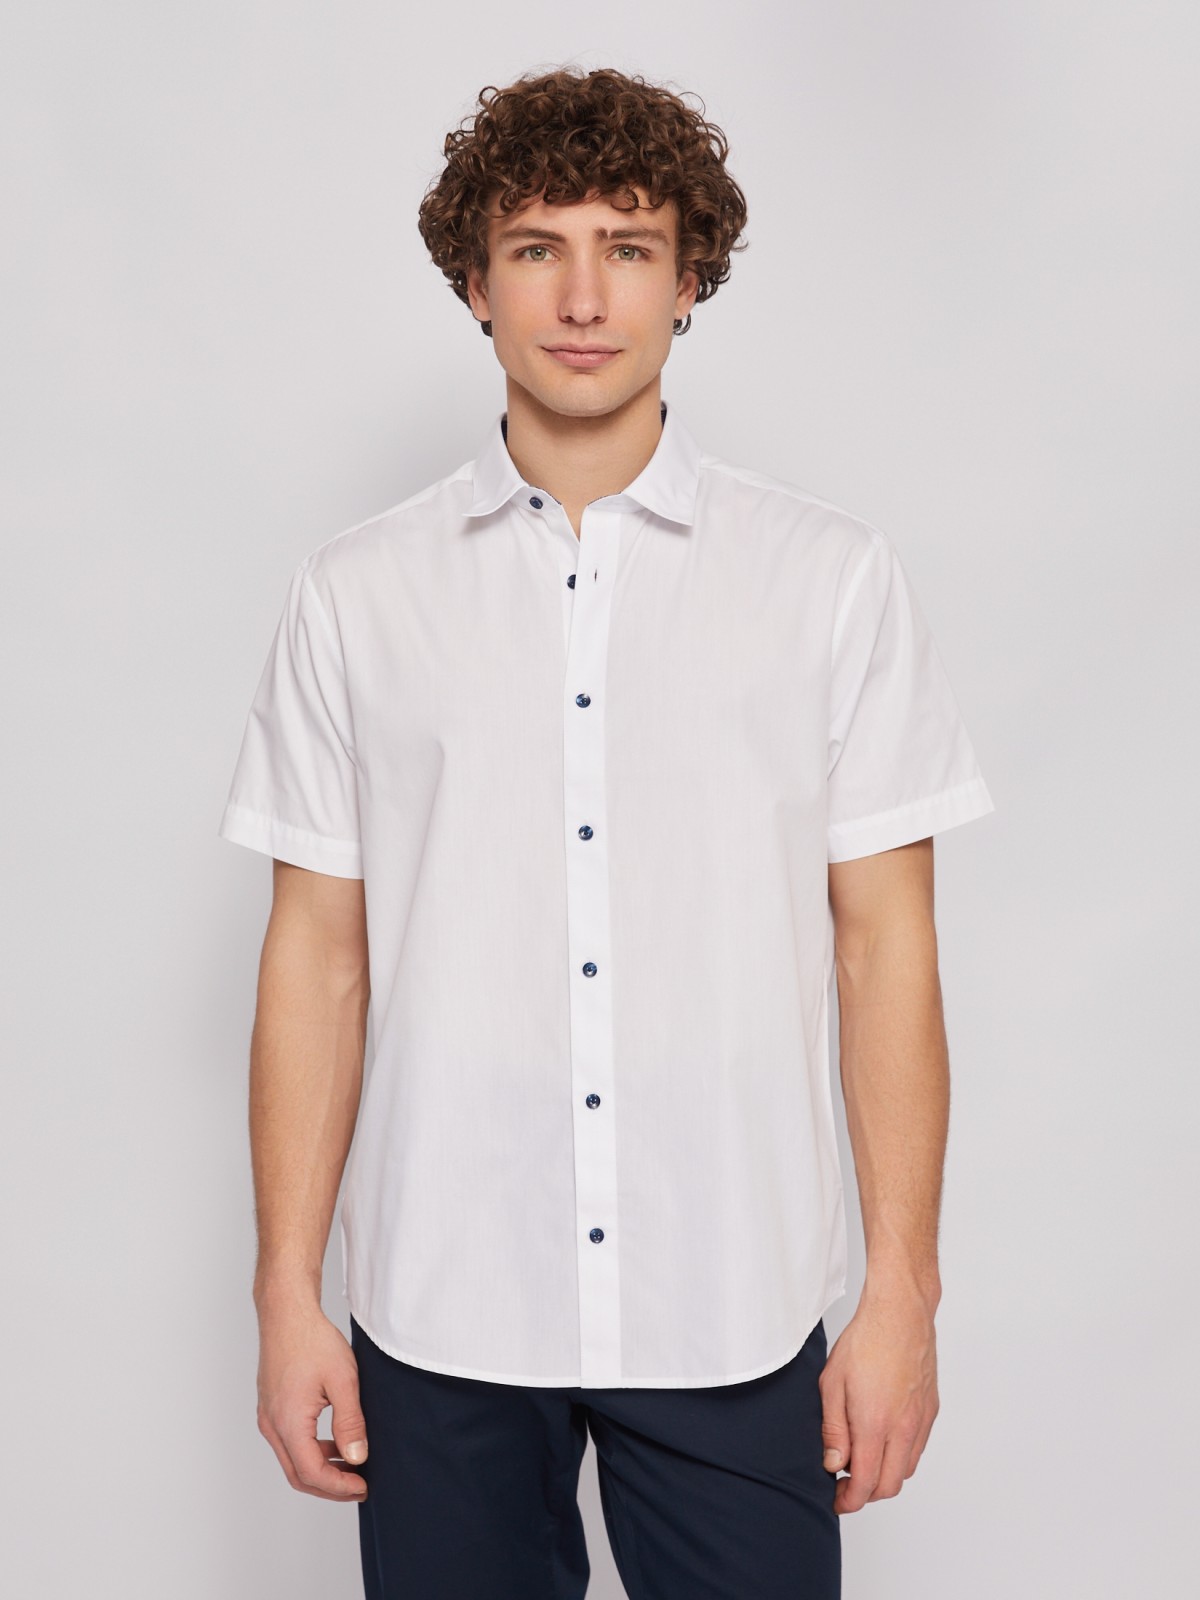 Офисная рубашка с коротким рукавом zolla 014222259012, цвет белый, размер S - фото 1